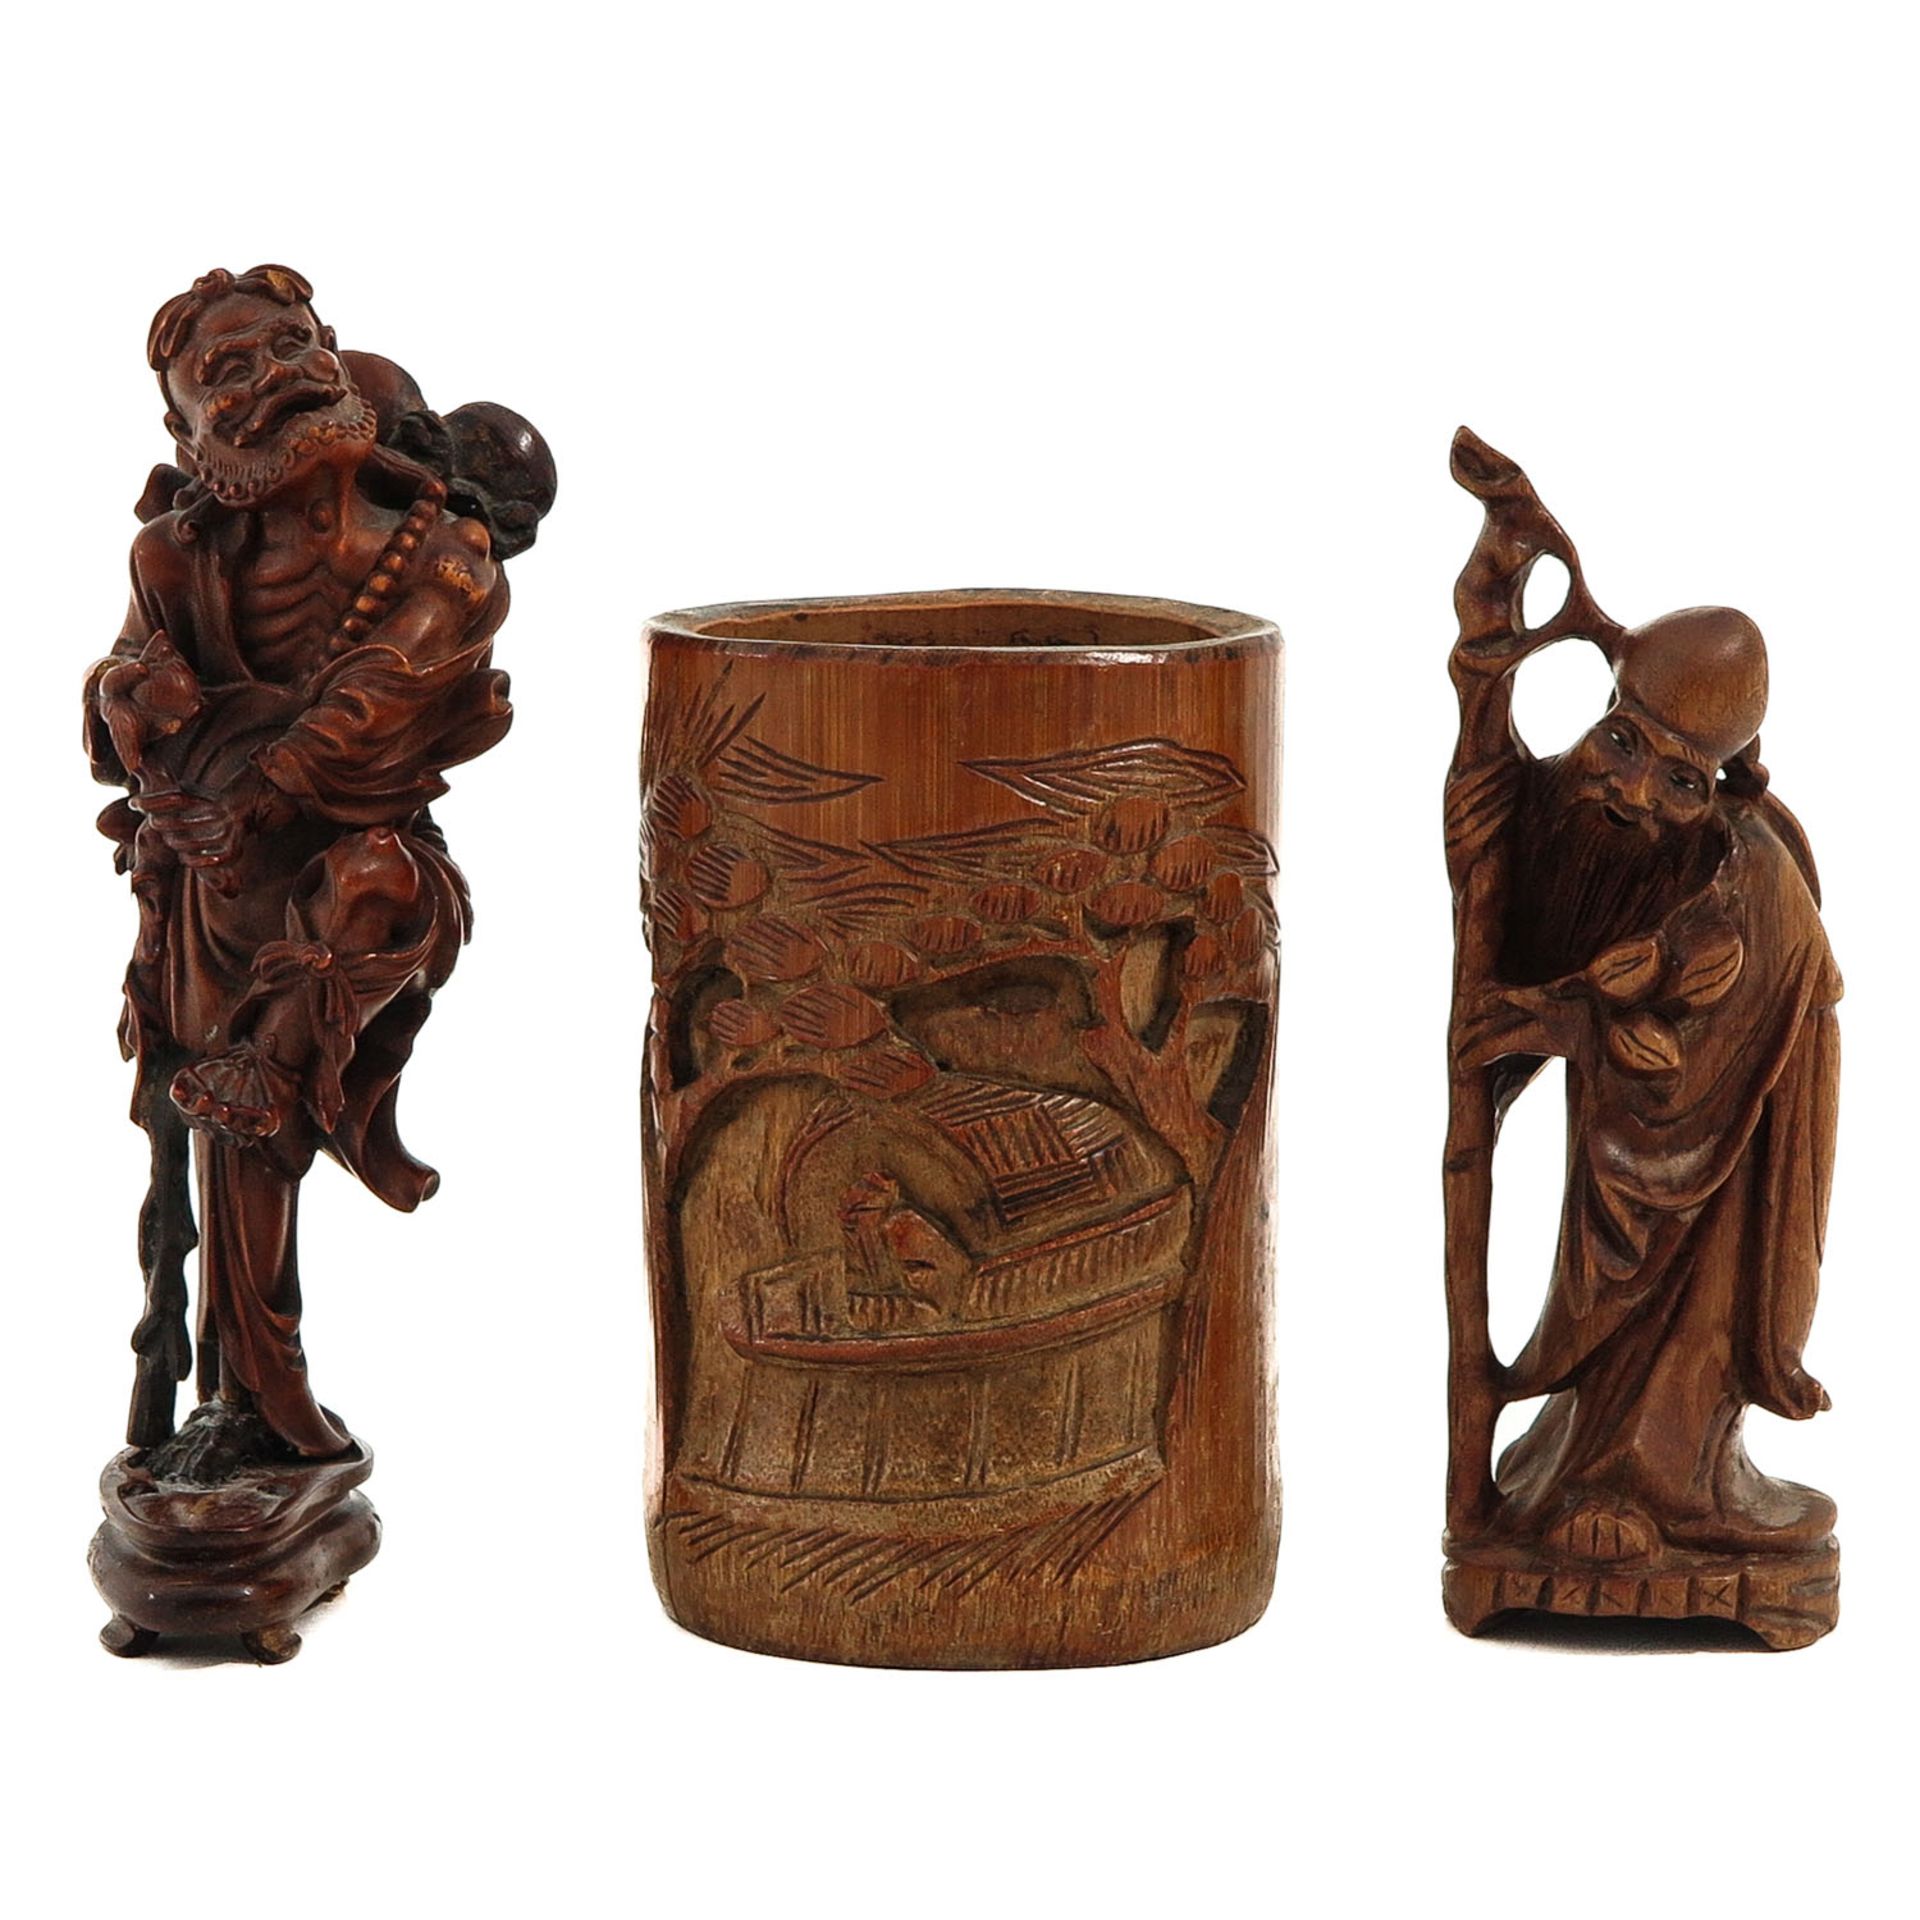 A Wood Brush Pot and 2 Sculptures